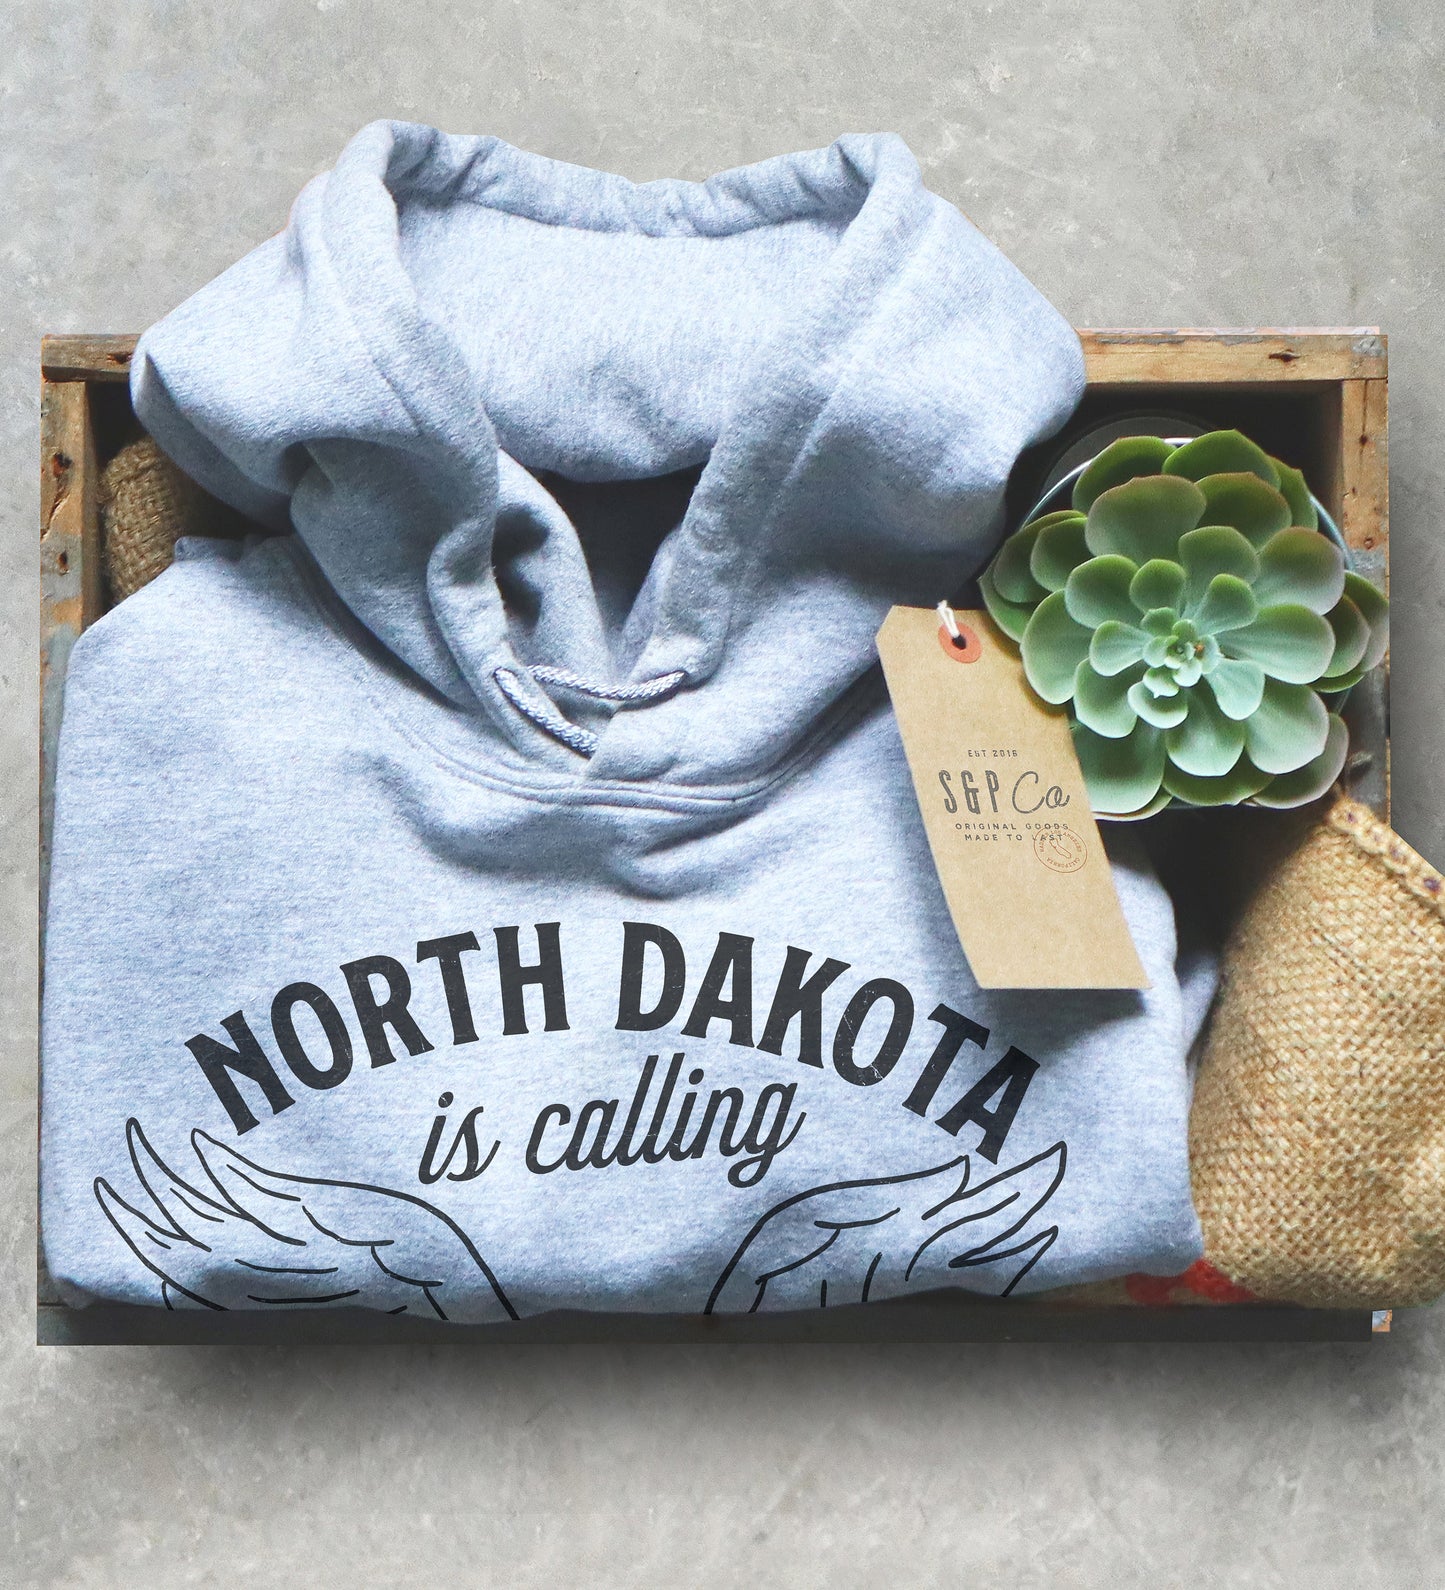 North Dakota Hoodie - North